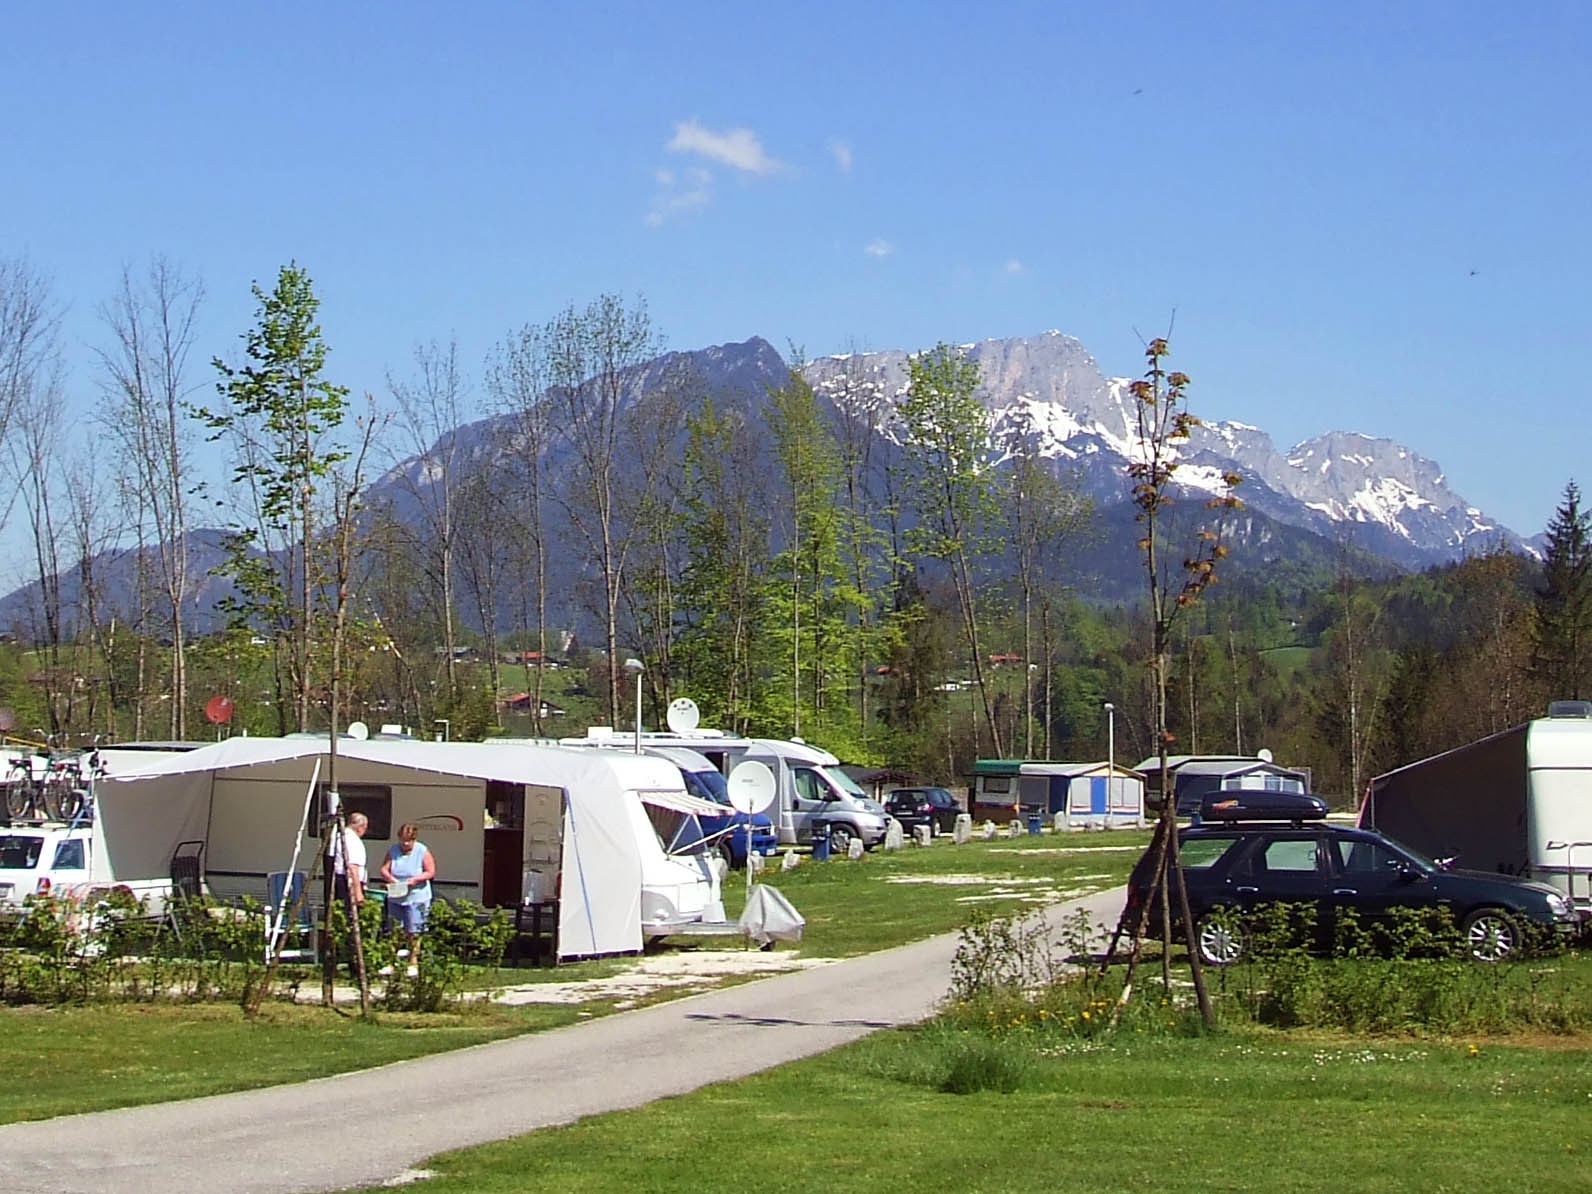 Camping Mühlleiten GmbH